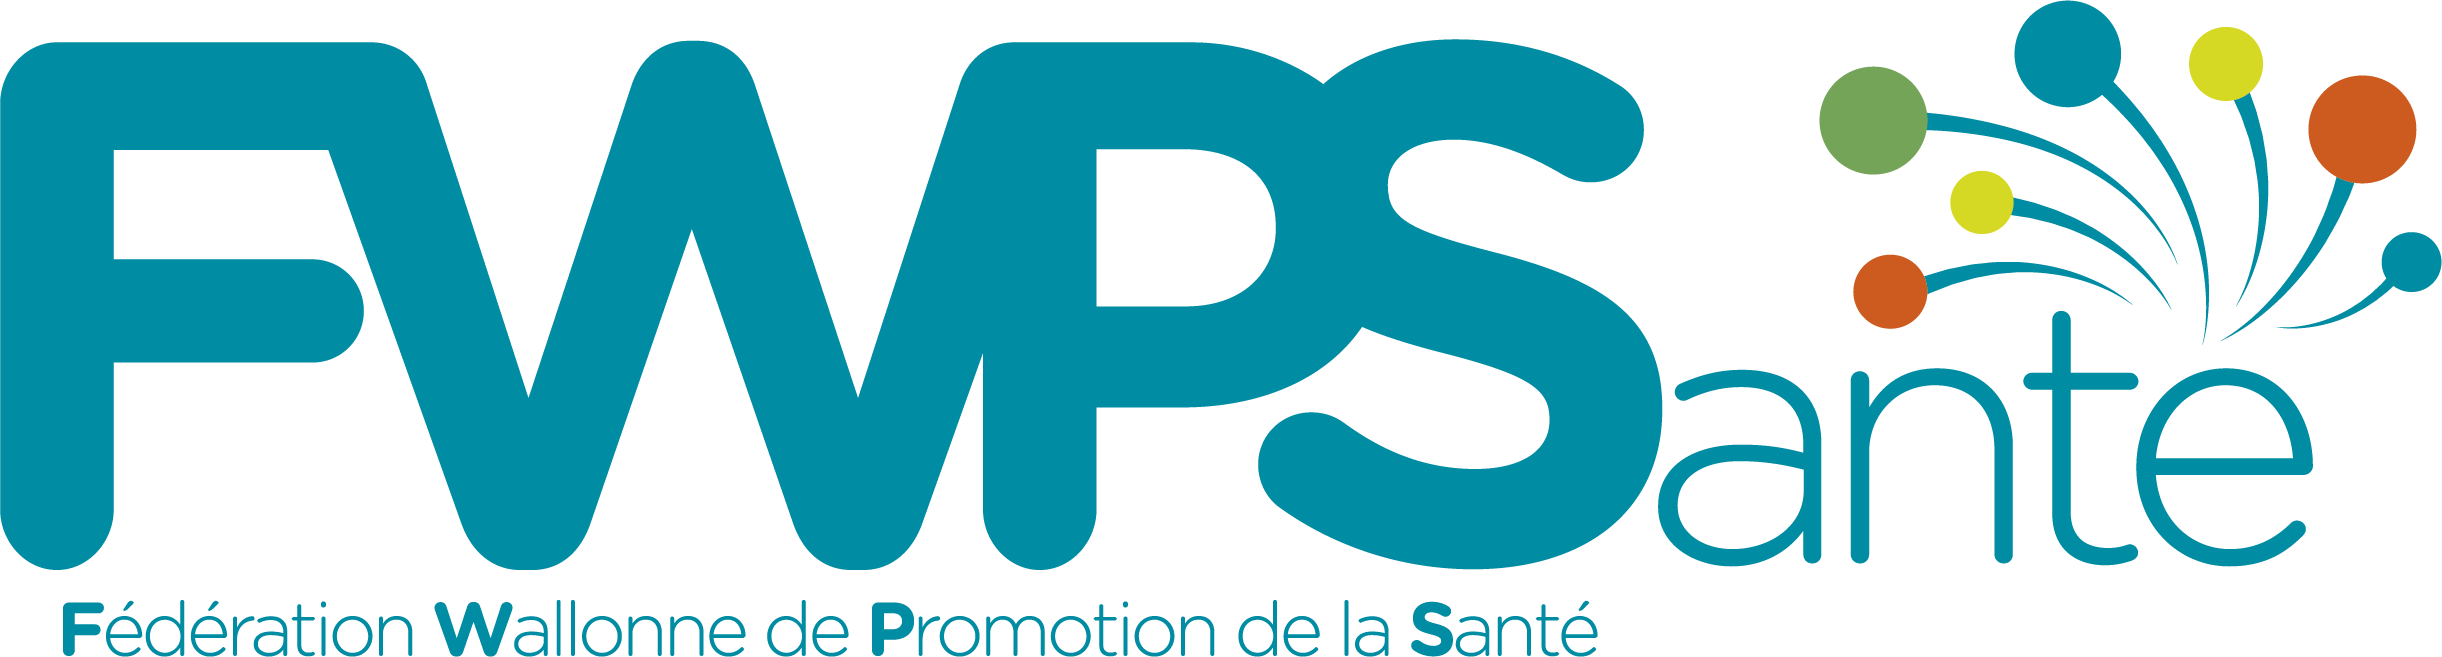 Logo FWPSanté - texte 1 ligne - couleurs